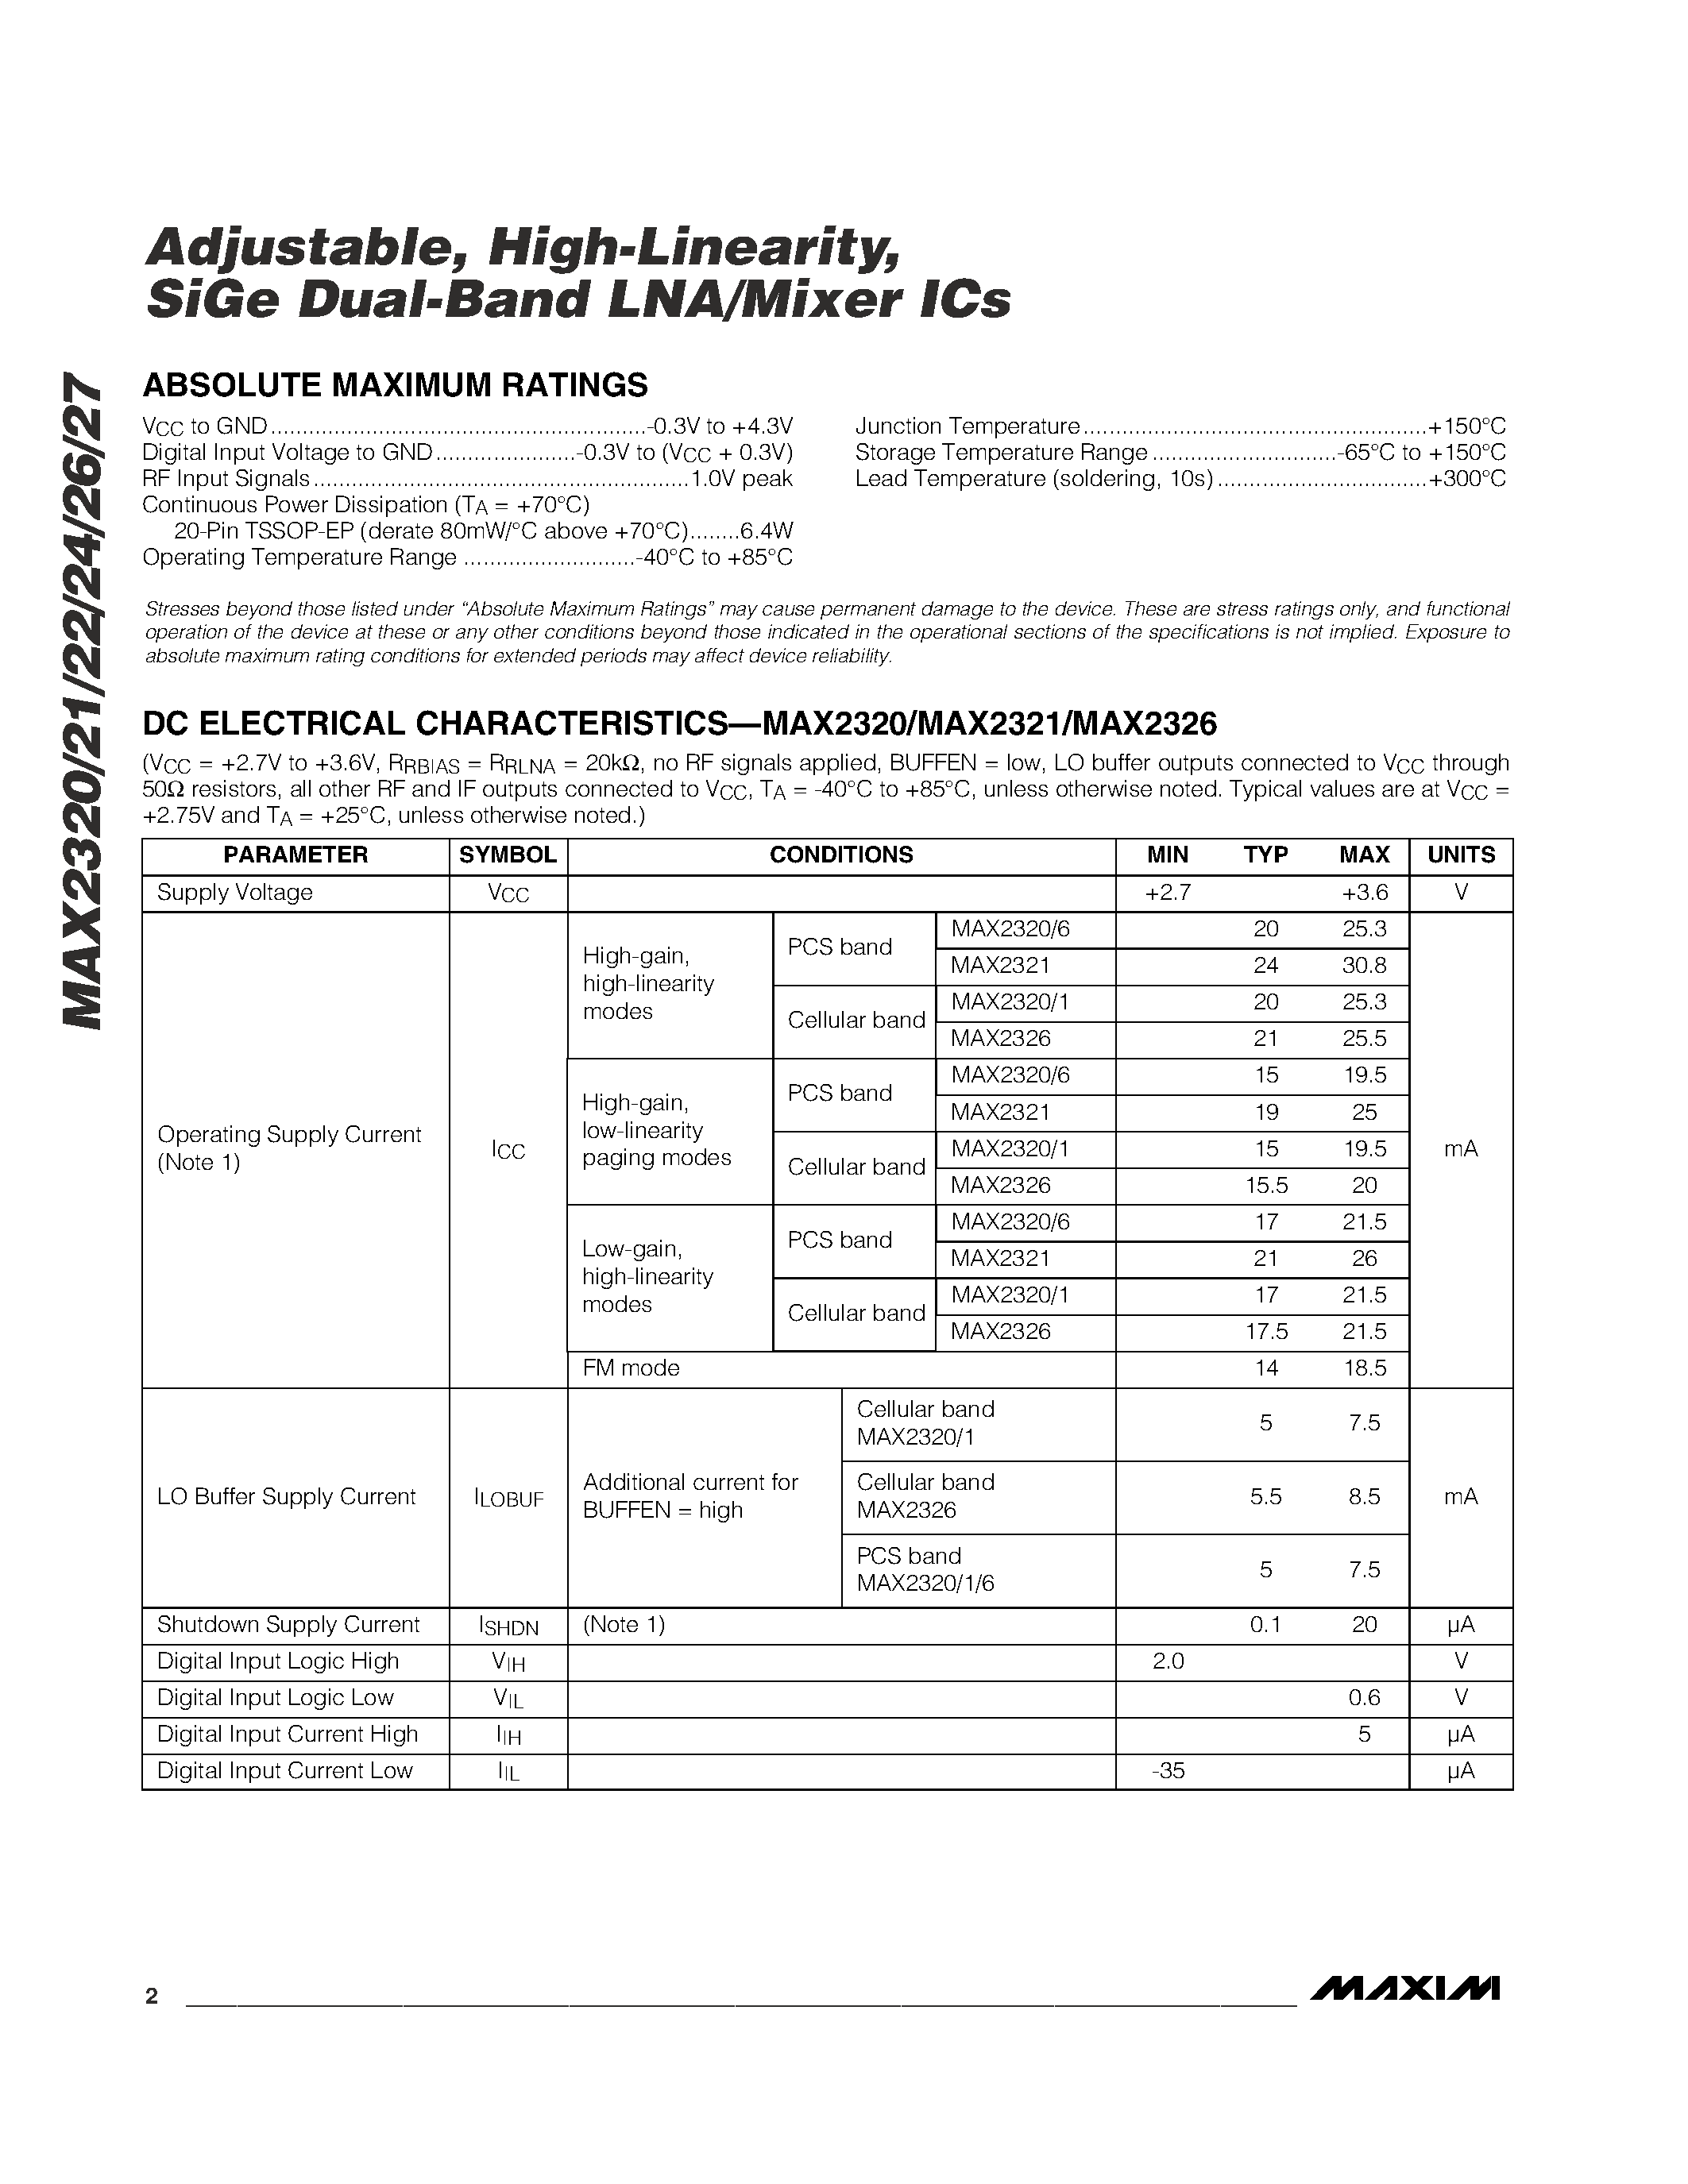 Даташит MAX2327EUP - Adjustable / High-Linearity / SiGe Dual-Band LNA/Mixer ICs страница 2